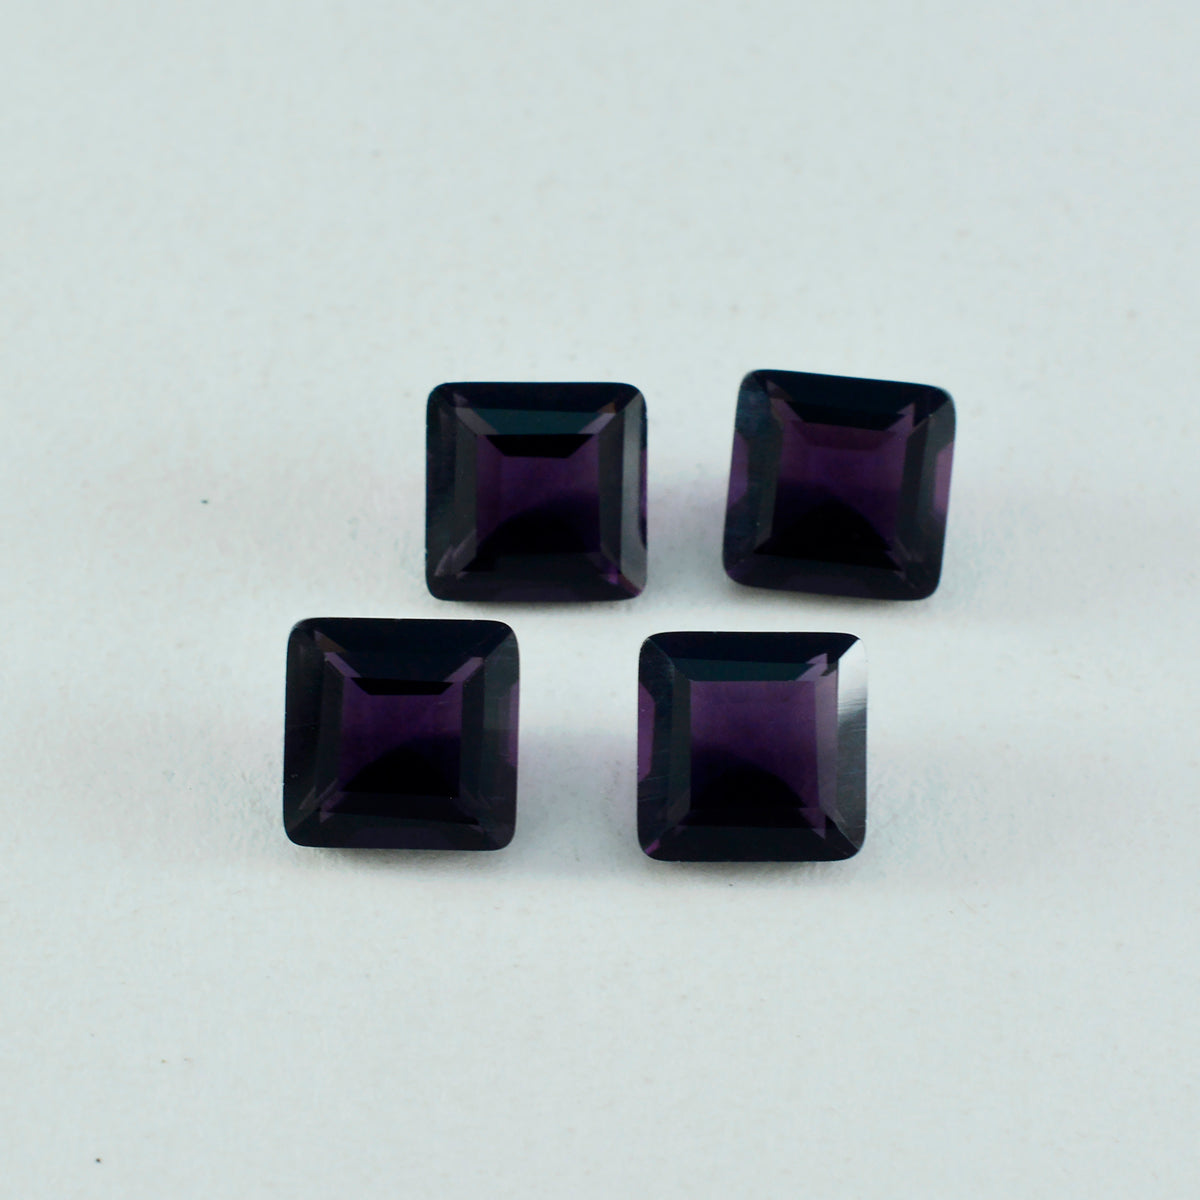 riyogems 1pc améthyste violette cz facettes 13x13 mm forme carrée aa qualité gemme